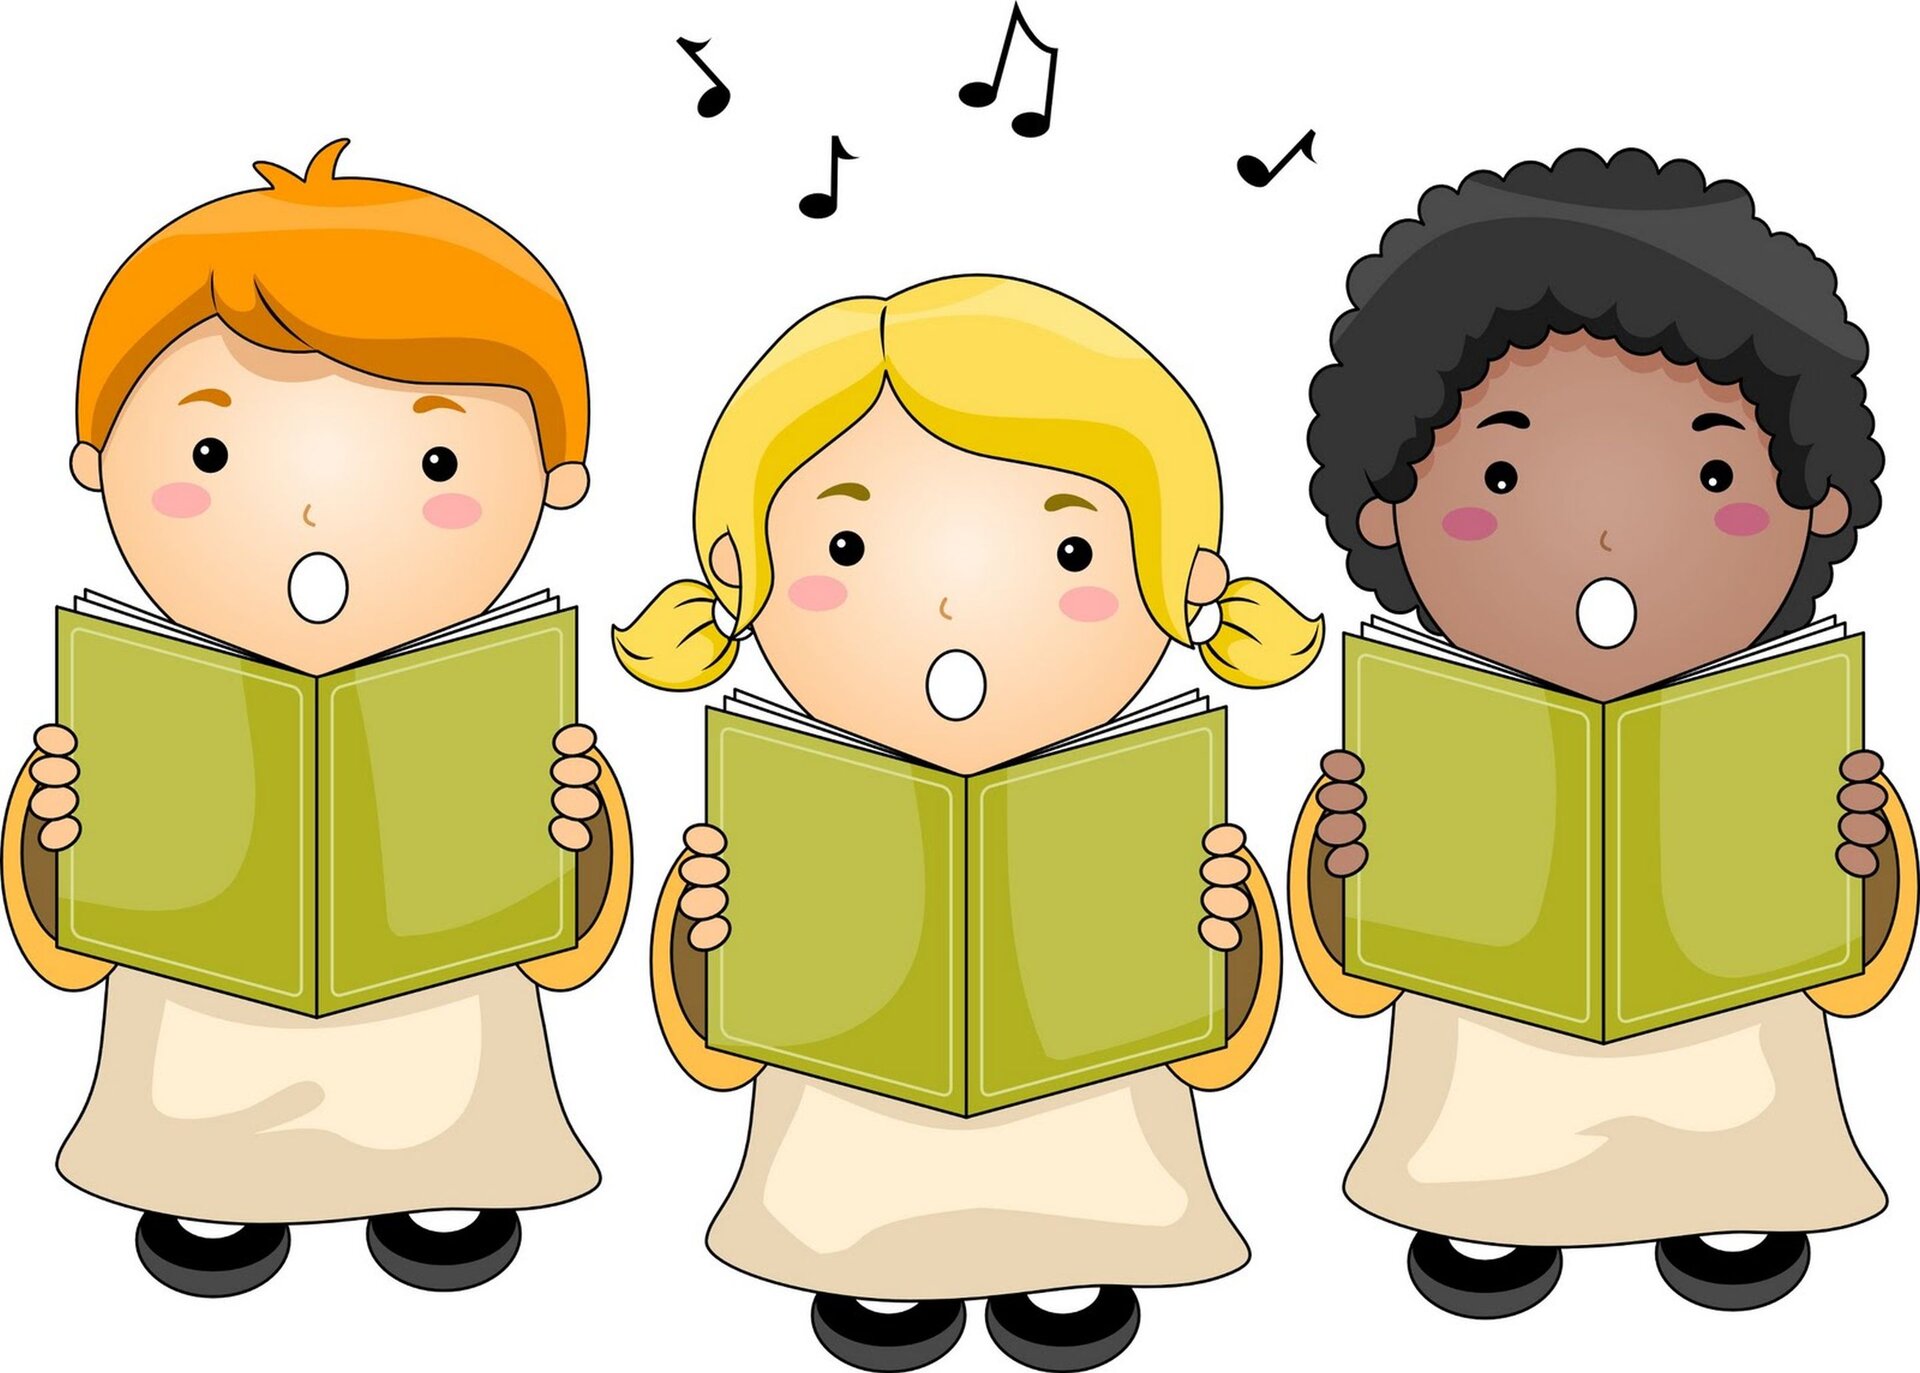 Ilustracja przedstawia tercet. Widoczny jest rysunek trójki dzieci śpiewających piosenkę przy użyciu śpiewników.